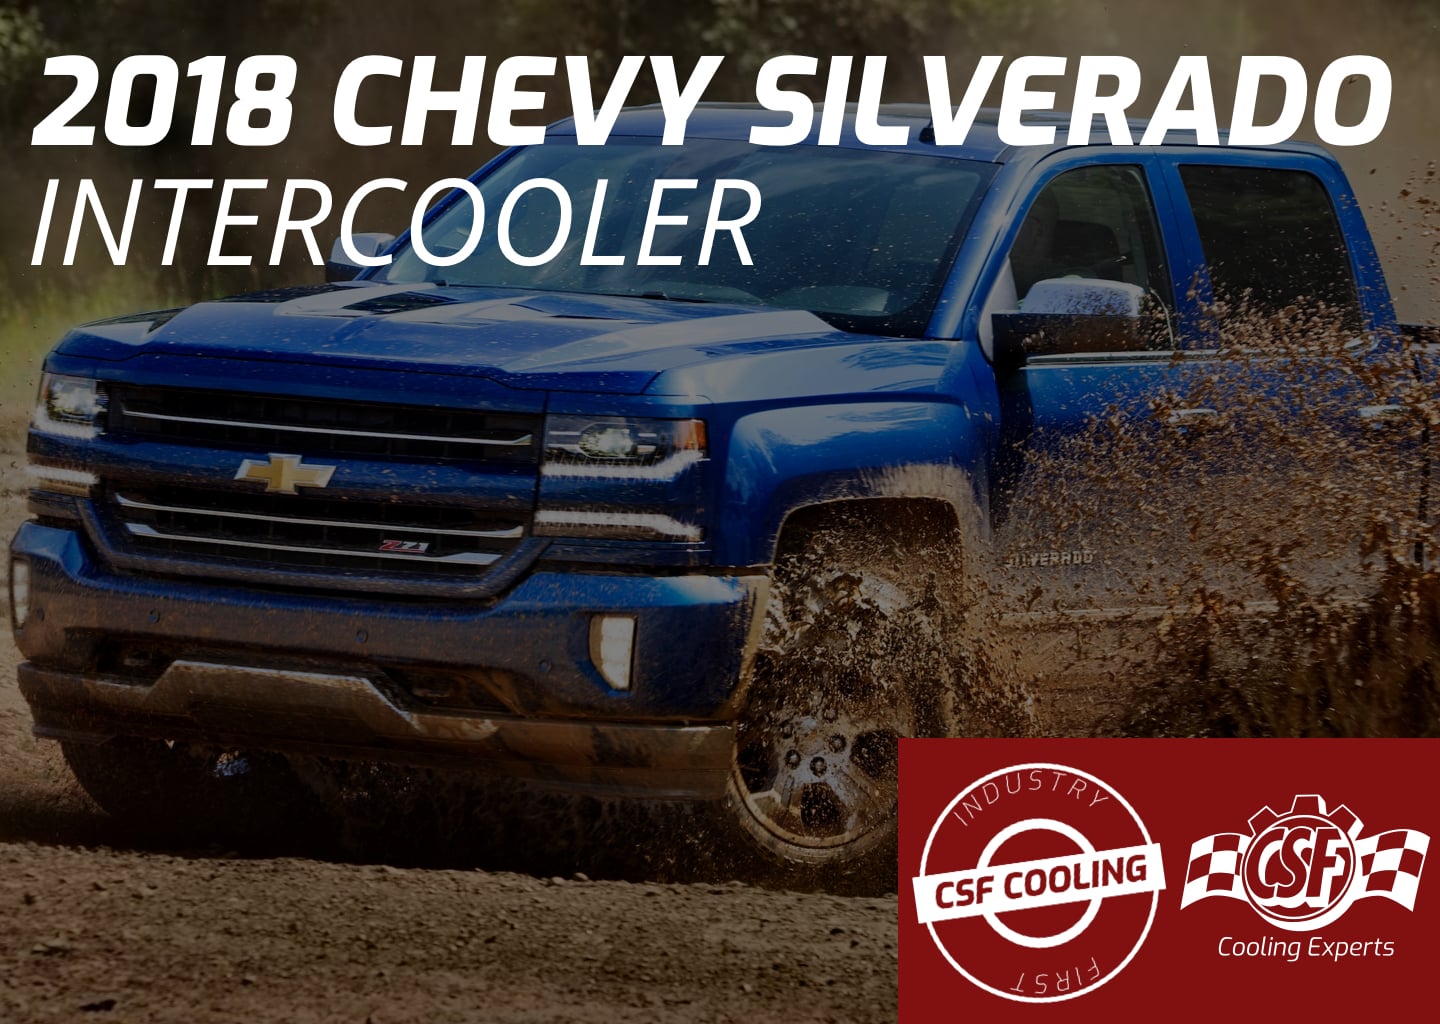 2018 Chevrolet Silverado Intercooler